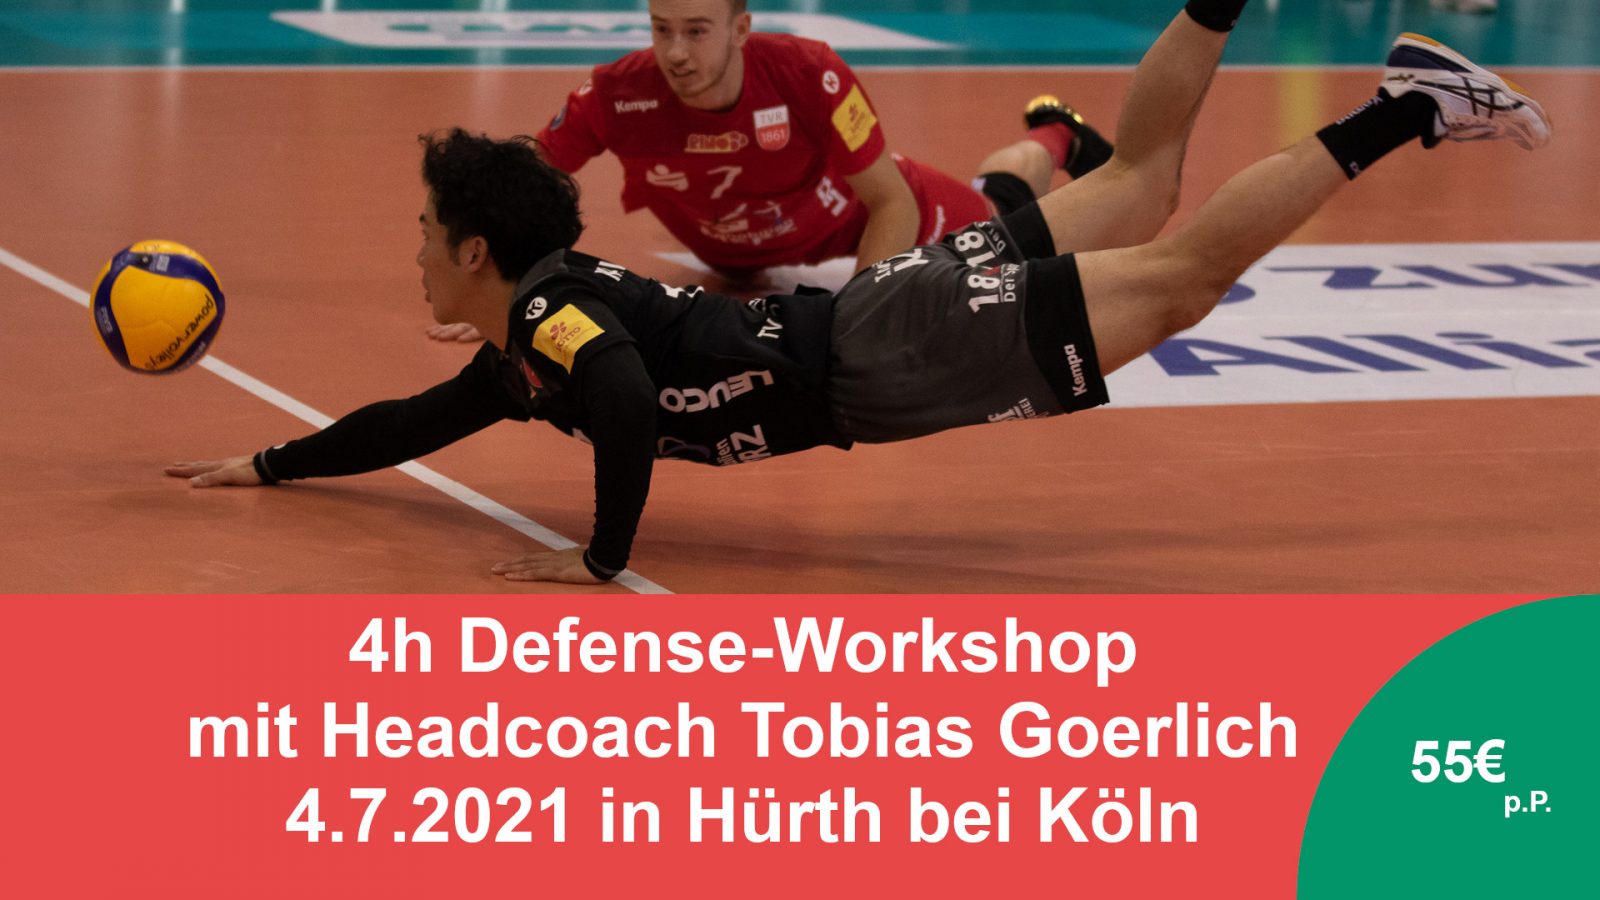 Defense-Workshop am 4.7.21 in Hürth bei Köln